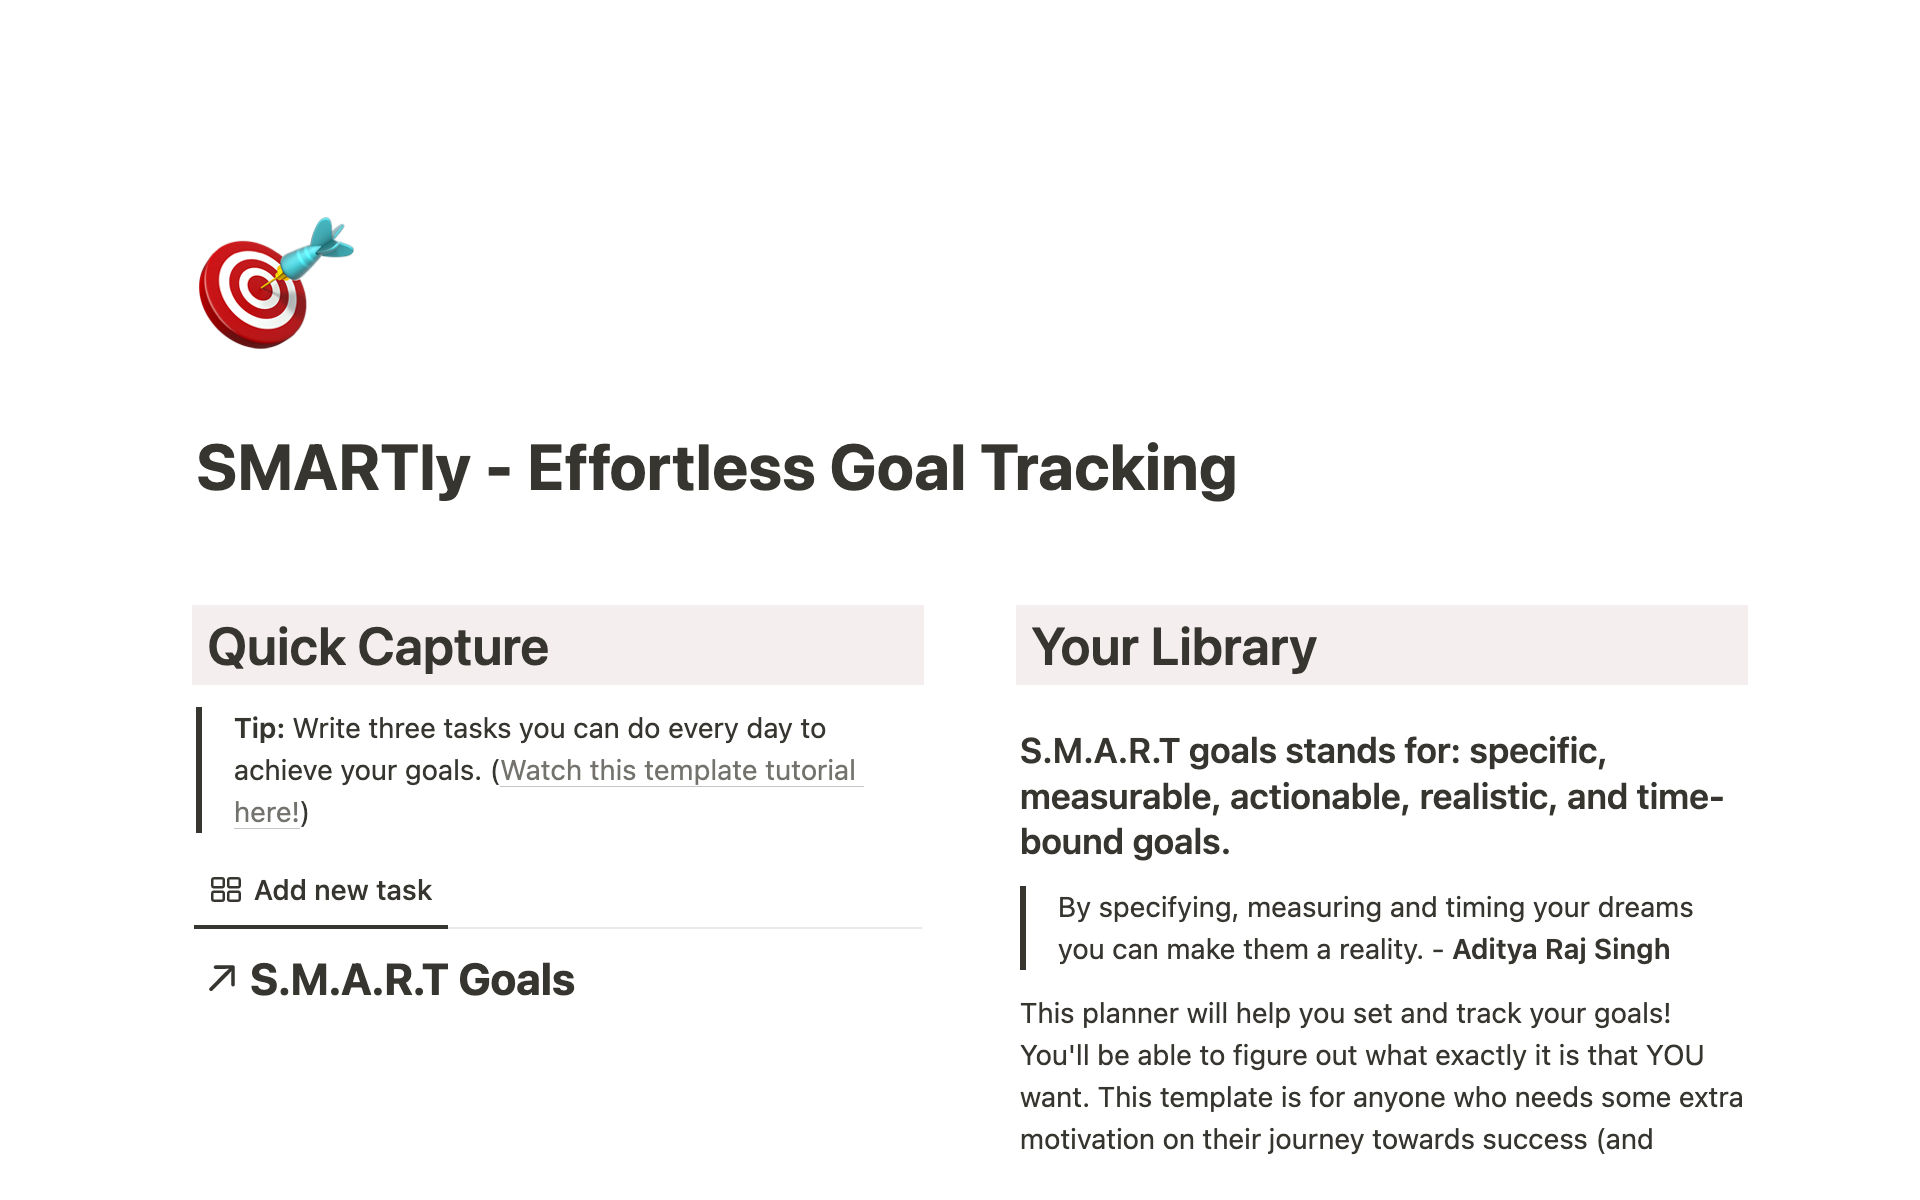 Vista previa de una plantilla para SMARTly - Effortless Goal Tracking